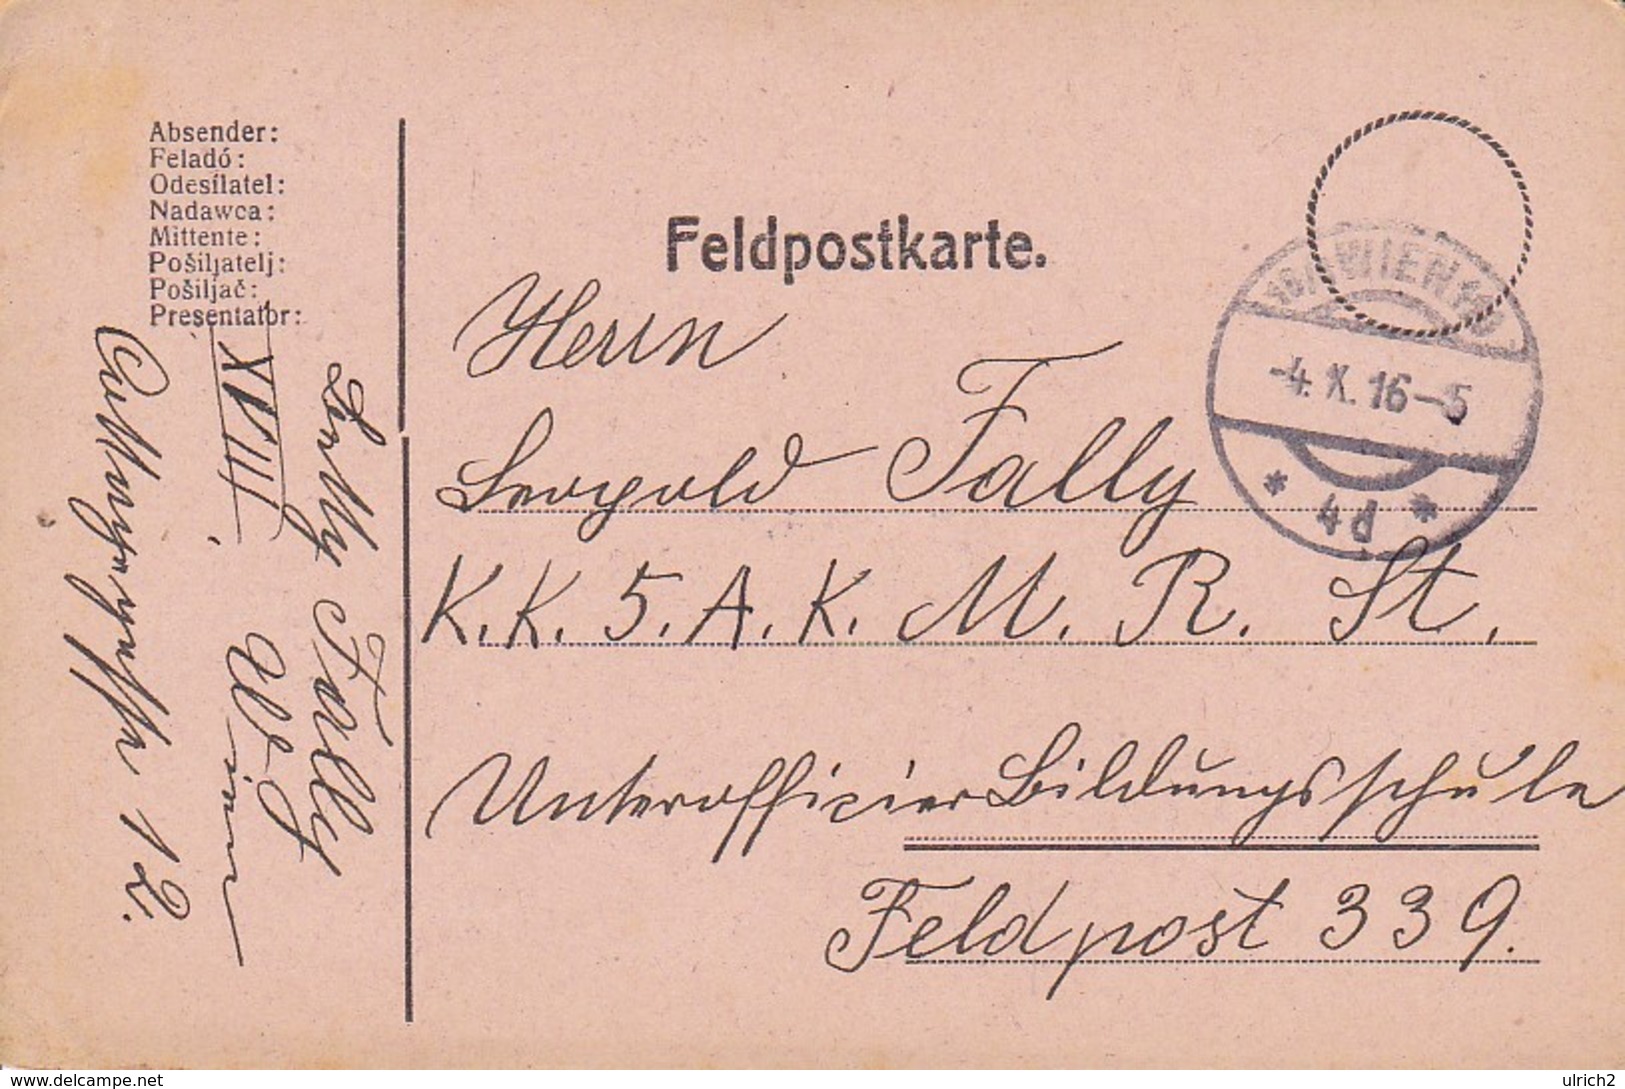 Feldpostkarte Wien Nach K.k. 5. A.K.M.R.St. Feldpost 339 - 1916 (38786) - Briefe U. Dokumente